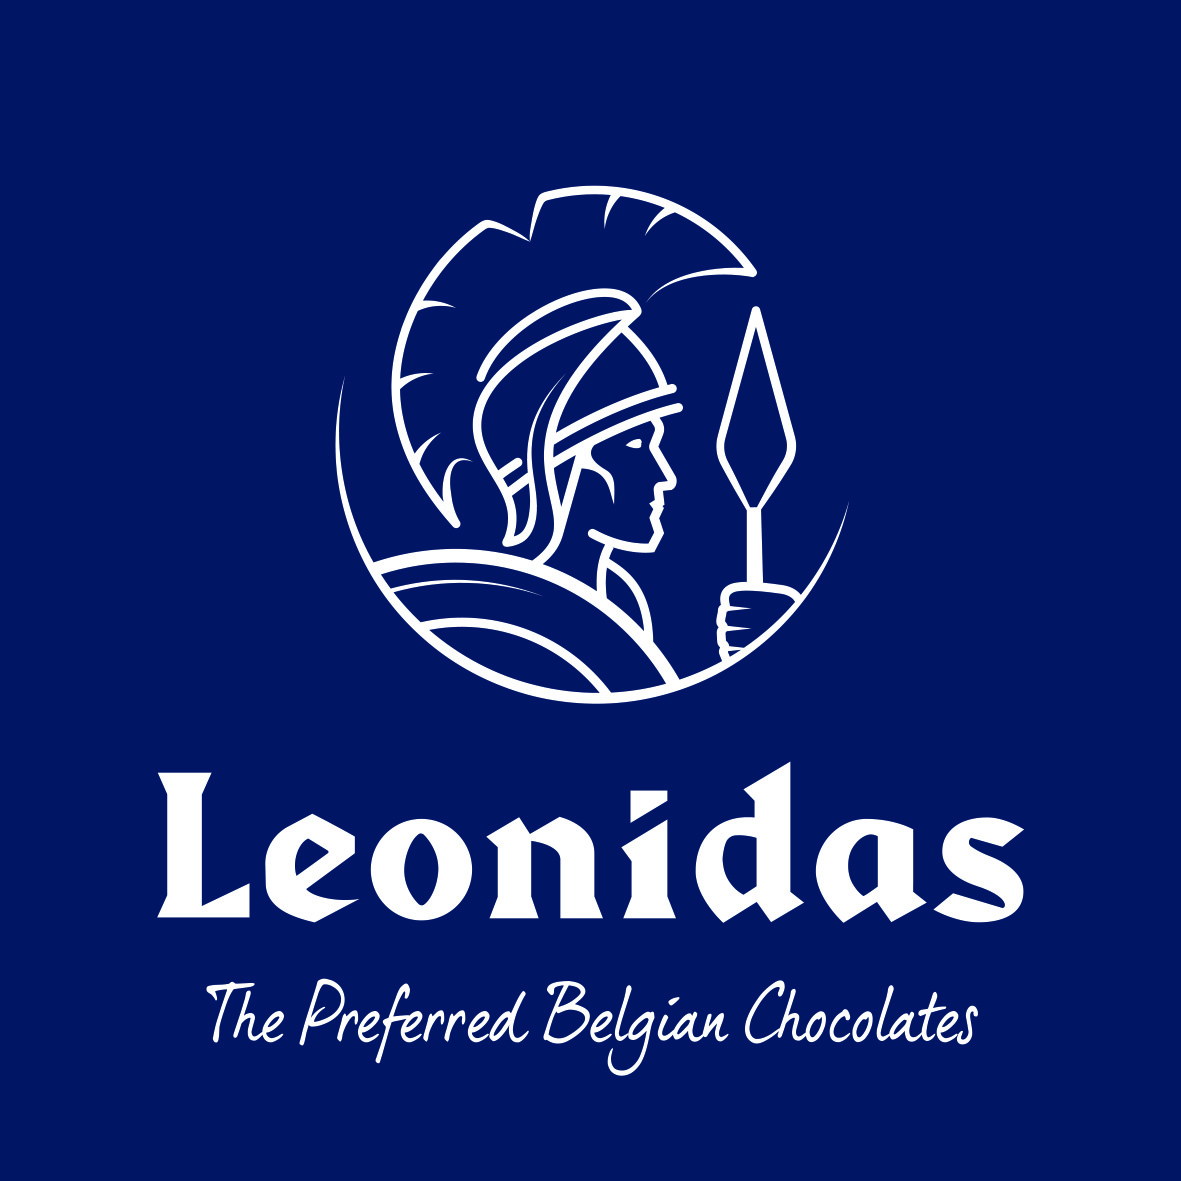 https://www.leonidas-cafe.com/uploads/b/ec15f0e0-6fca-11ea-9074-89370e1de4cf/Leonidas_logo_CMYK-1_MzM0Nj.jpg